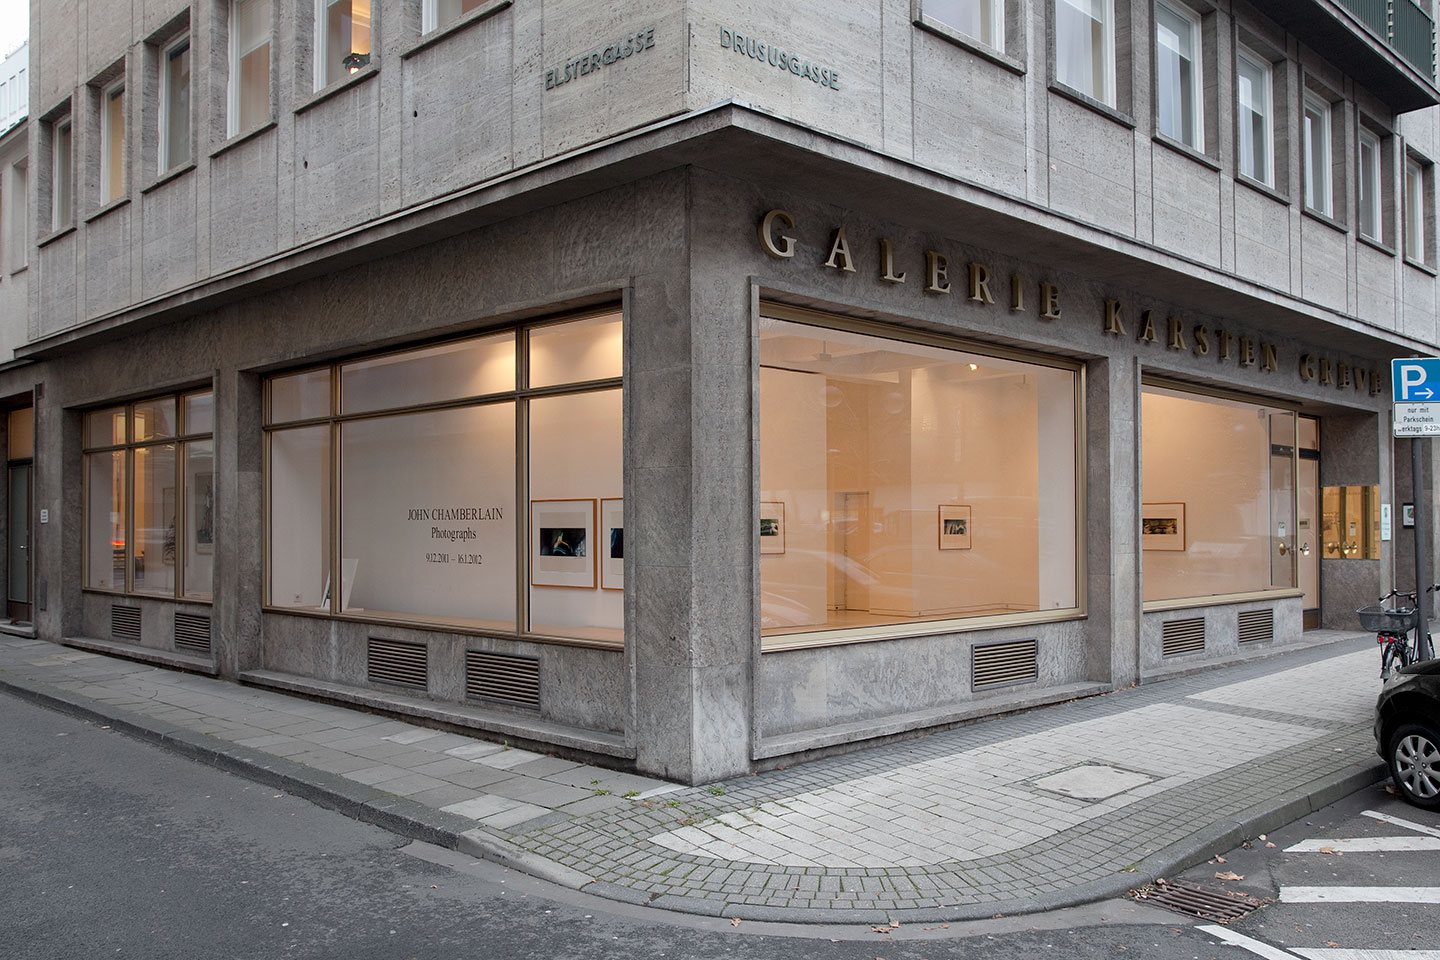 (c) Galerie-karsten-greve.com